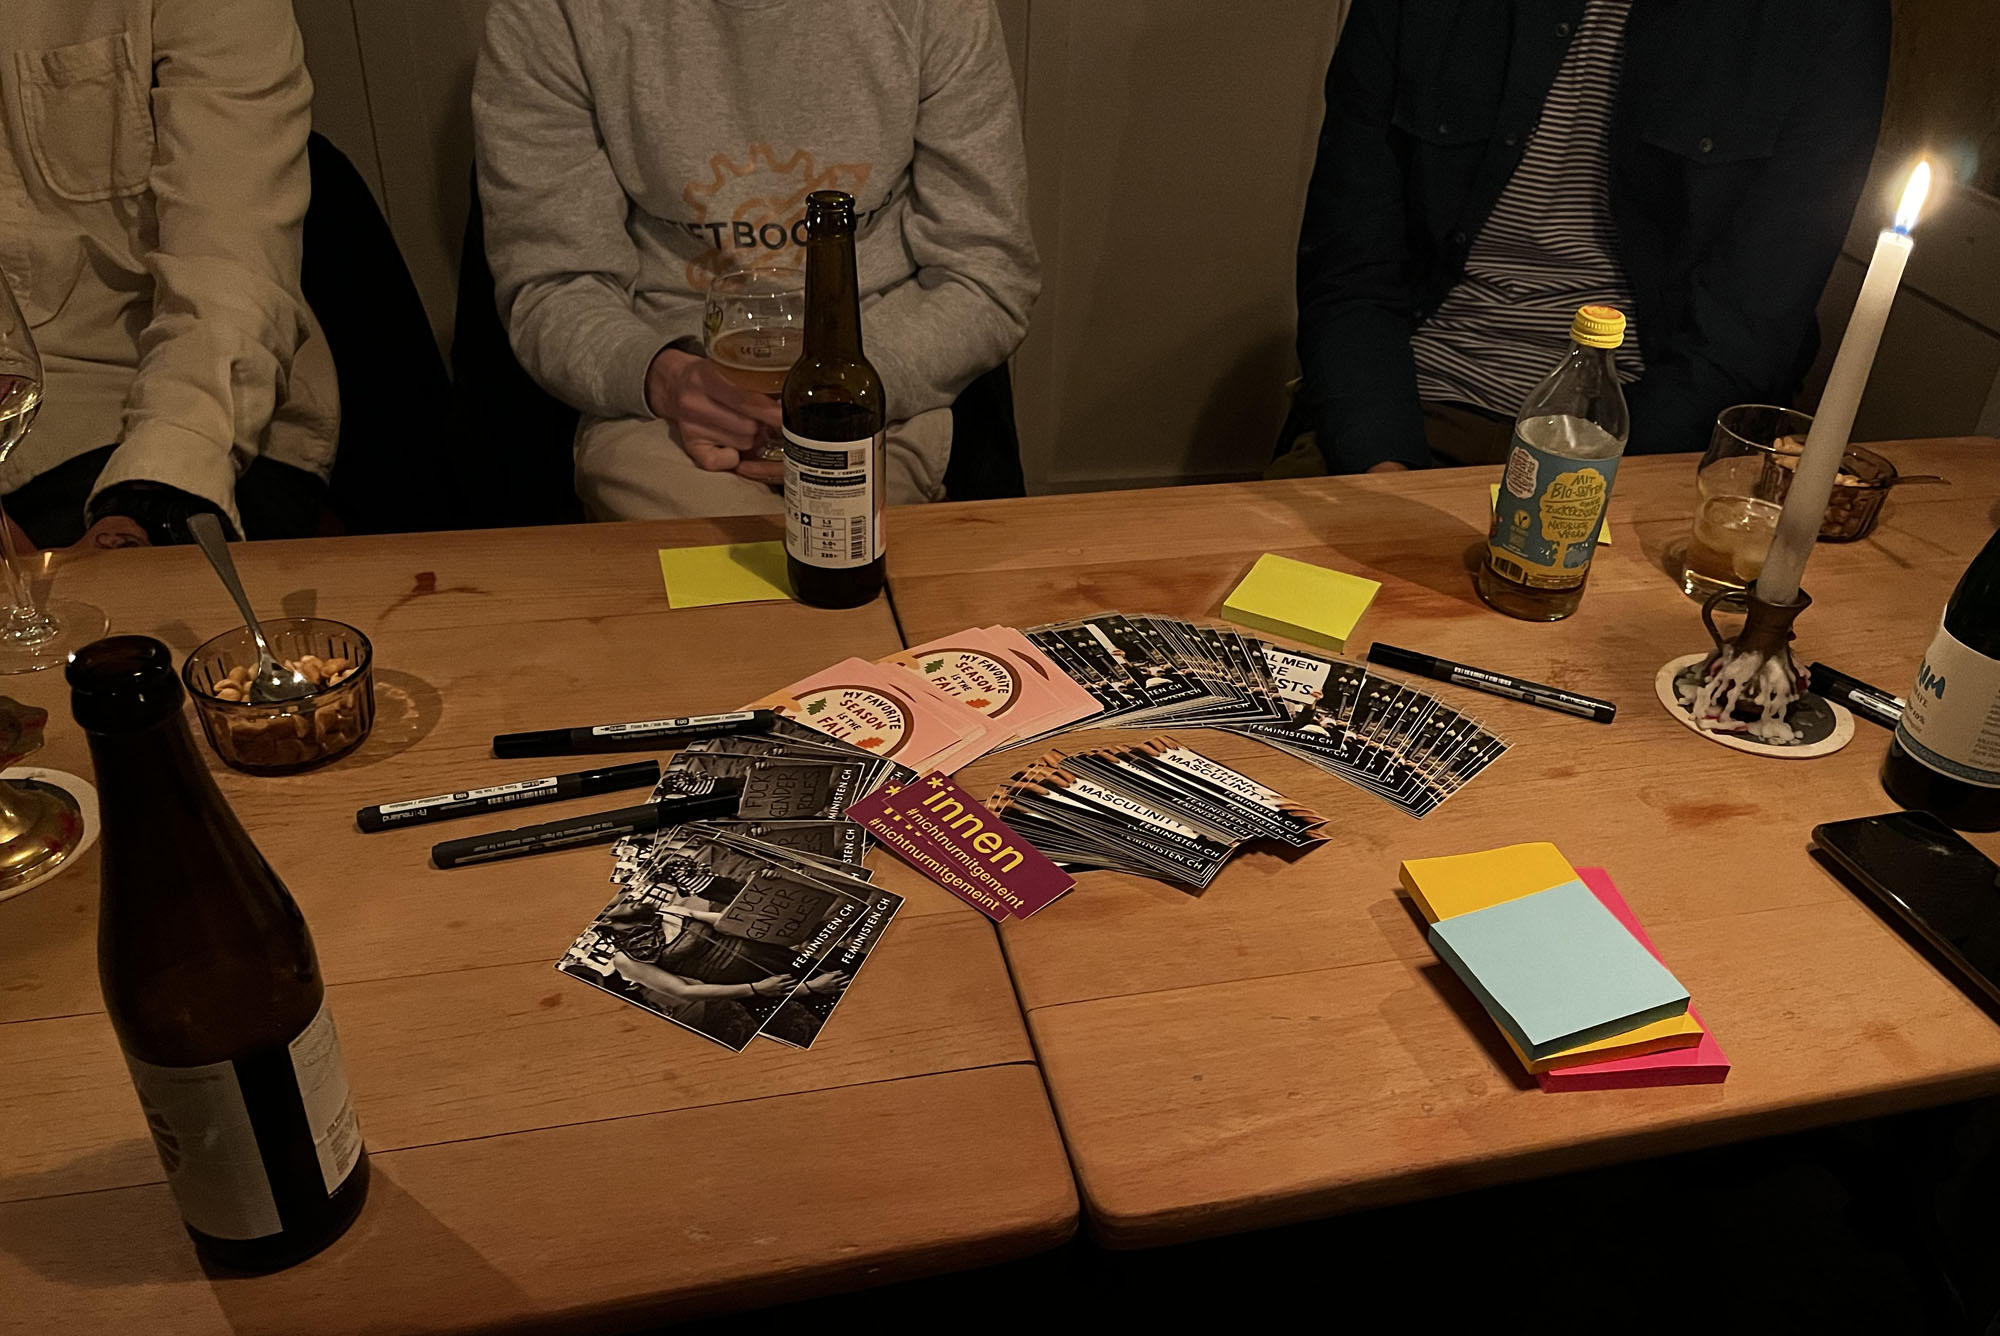 Tisch in einer Bar, Vereinsticker auf den Tisch, rundherum Getränkeflaschen